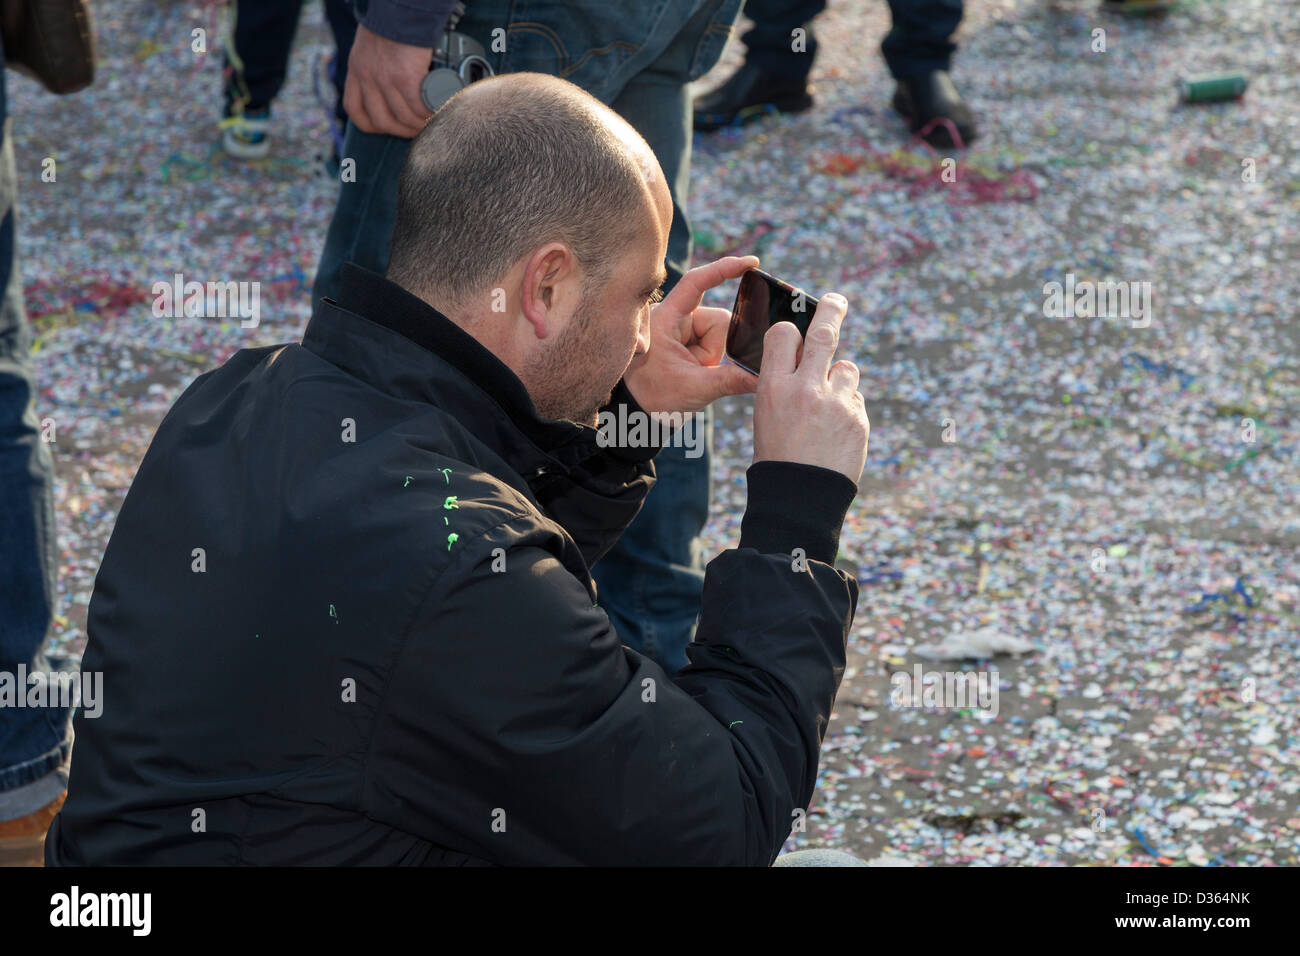 L'homme prend des photos du Carnaval, Italie Banque D'Images